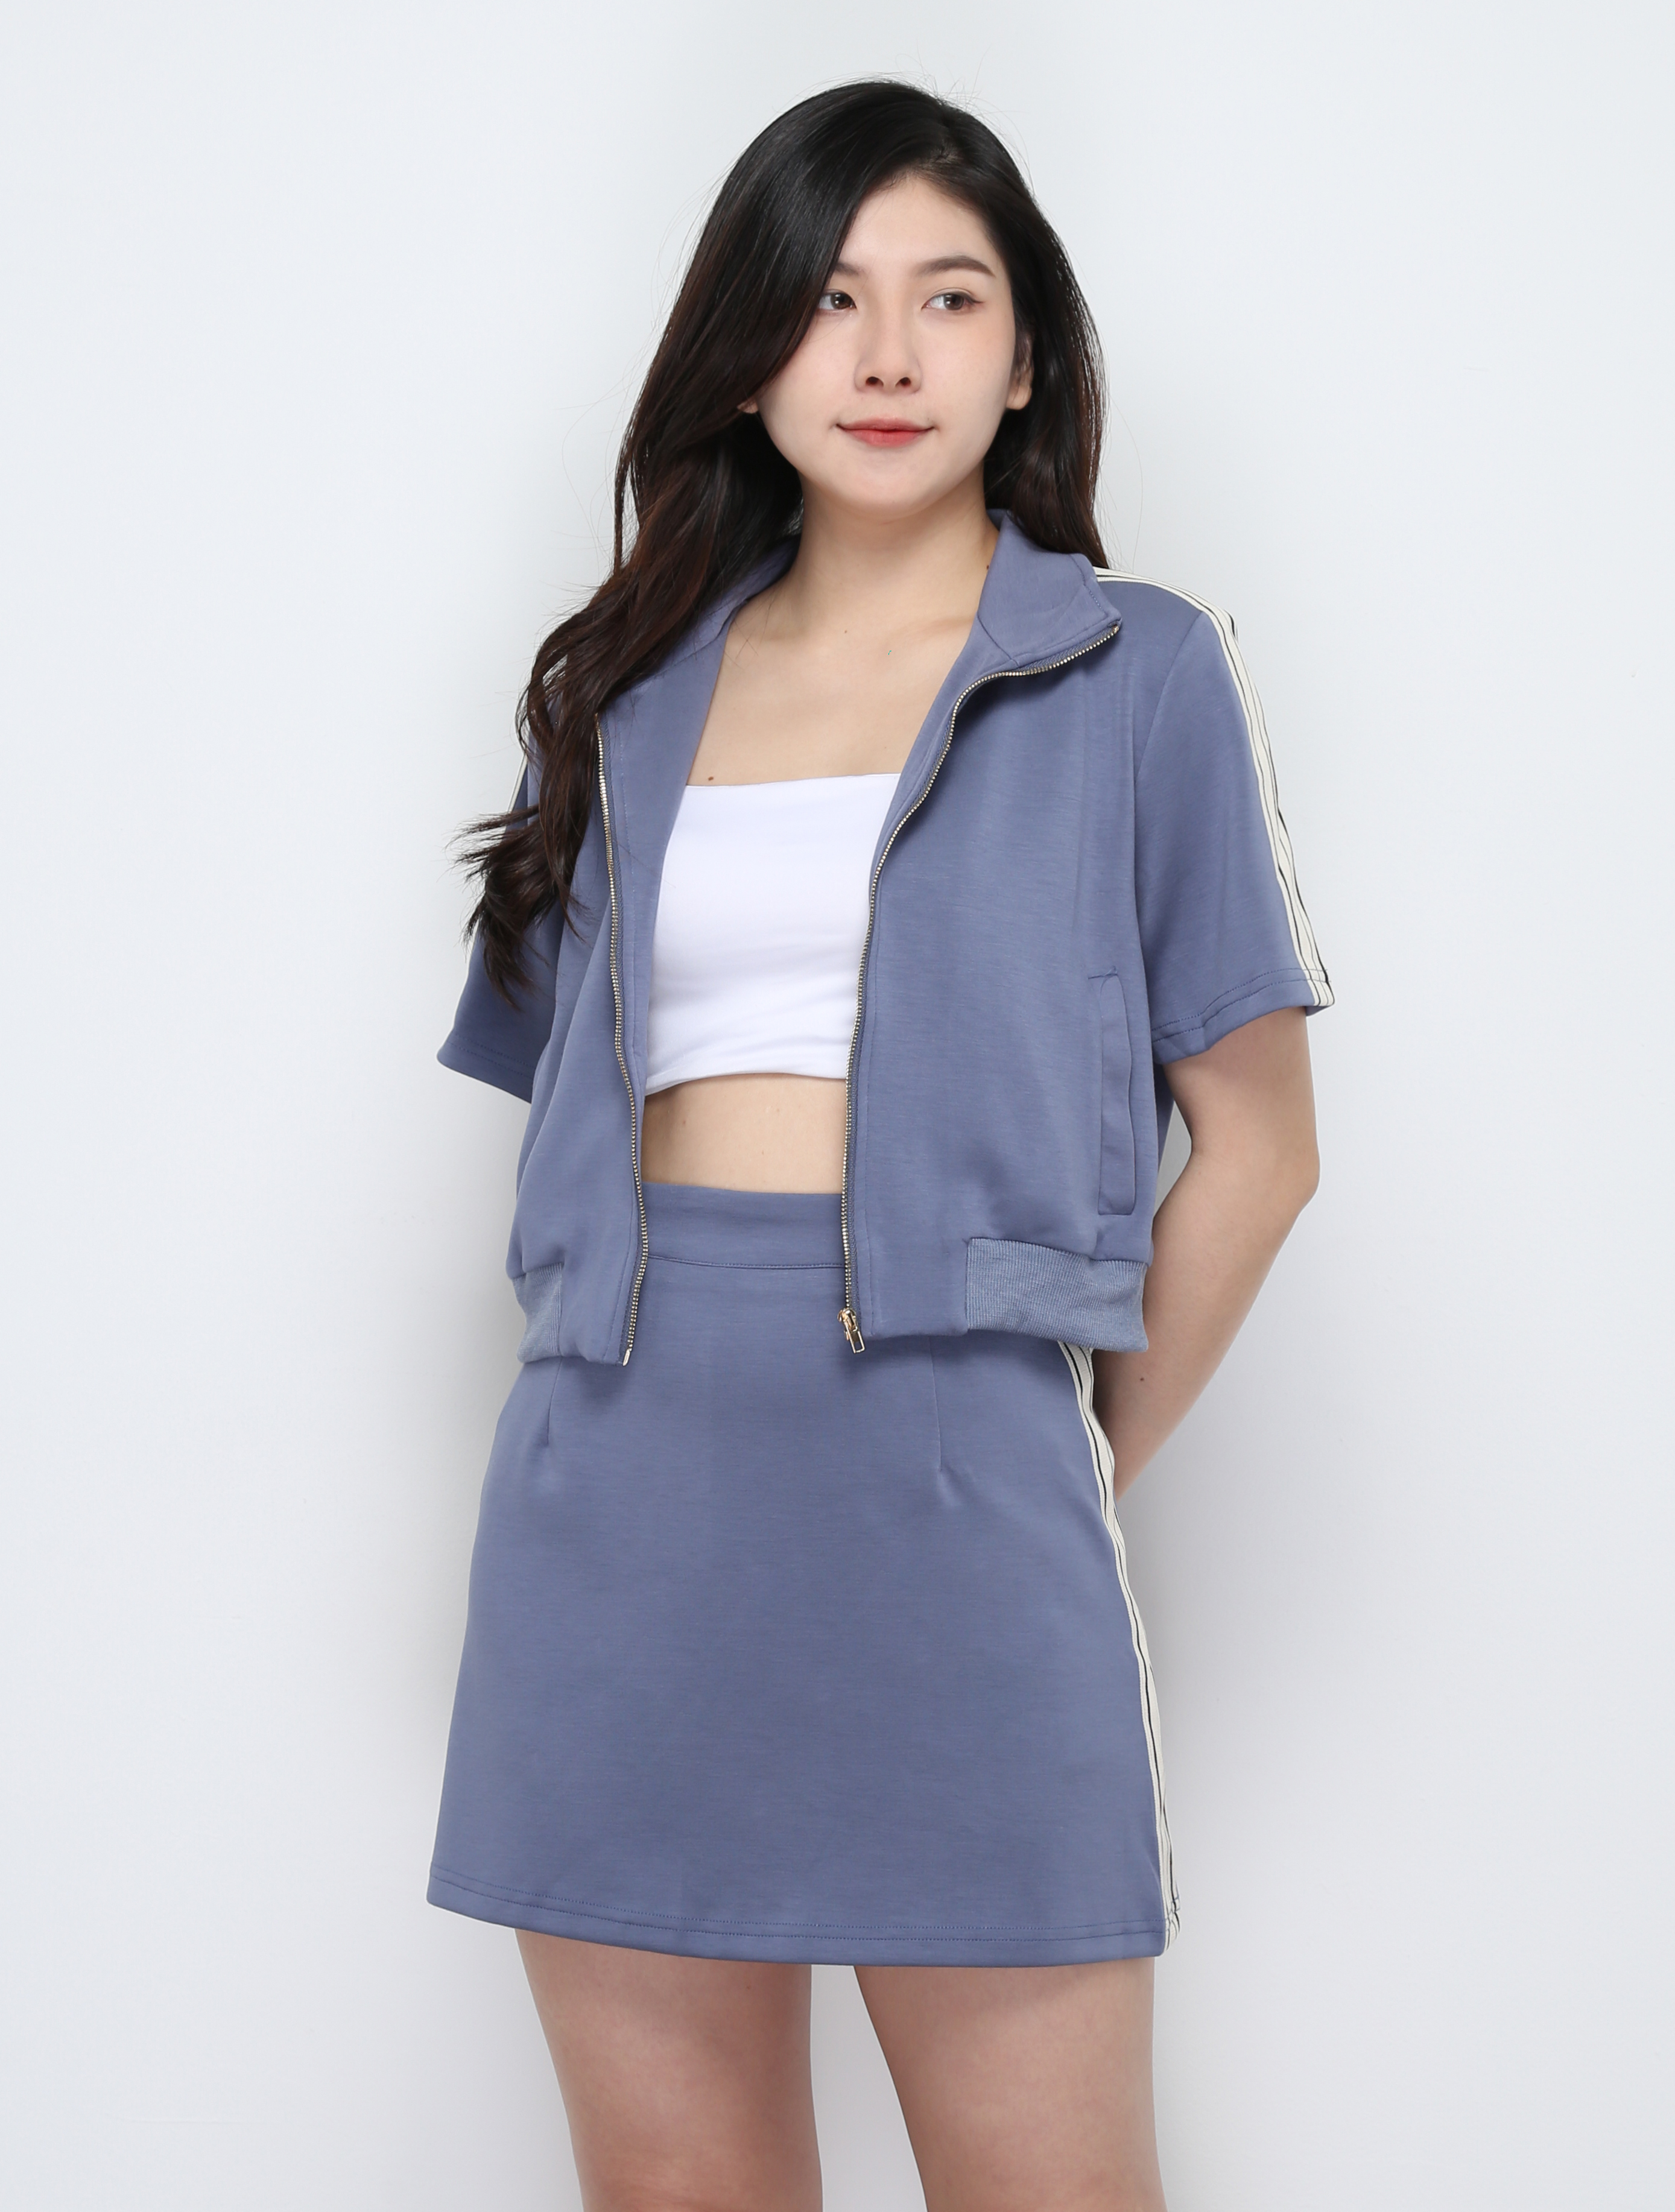 Short Sleeve Front Zip Top With Skirt Set 29492